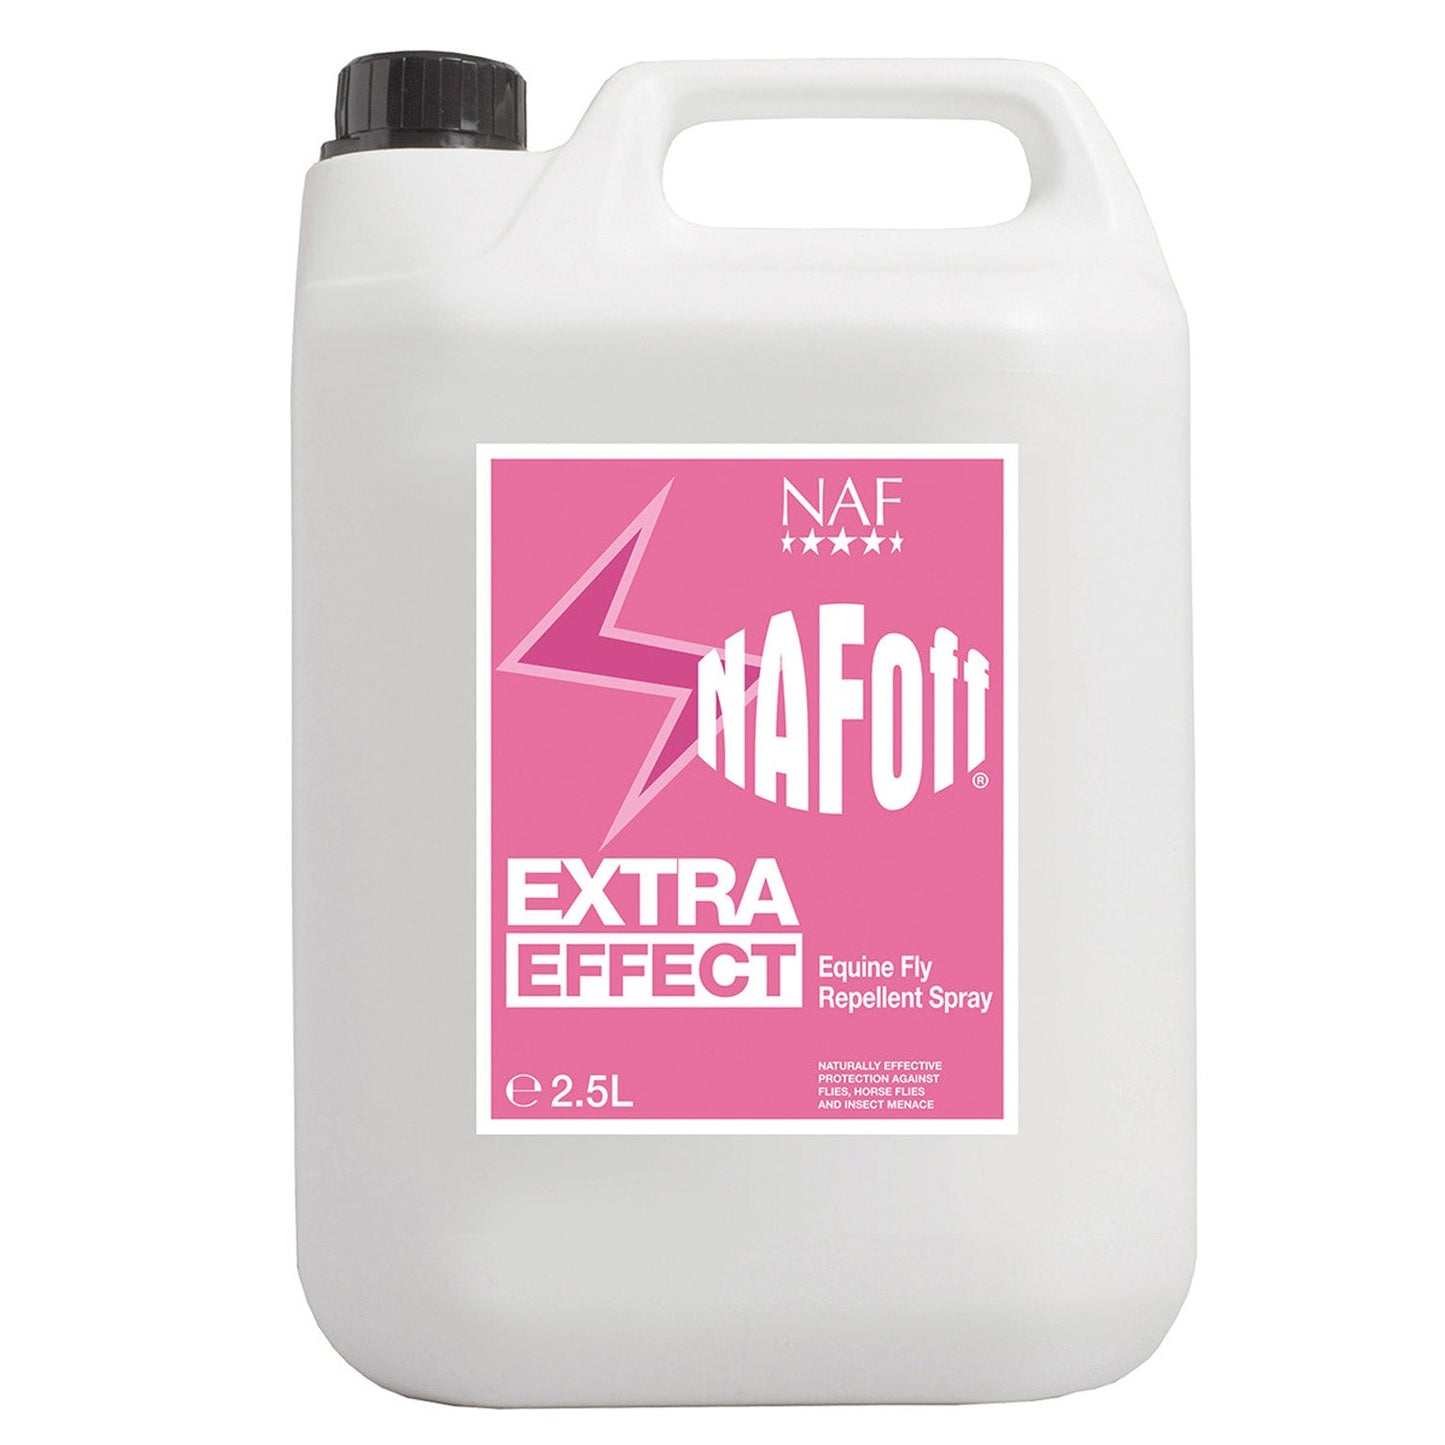 NAF OFF EXTRA EFFECT - Buy 2 save £5